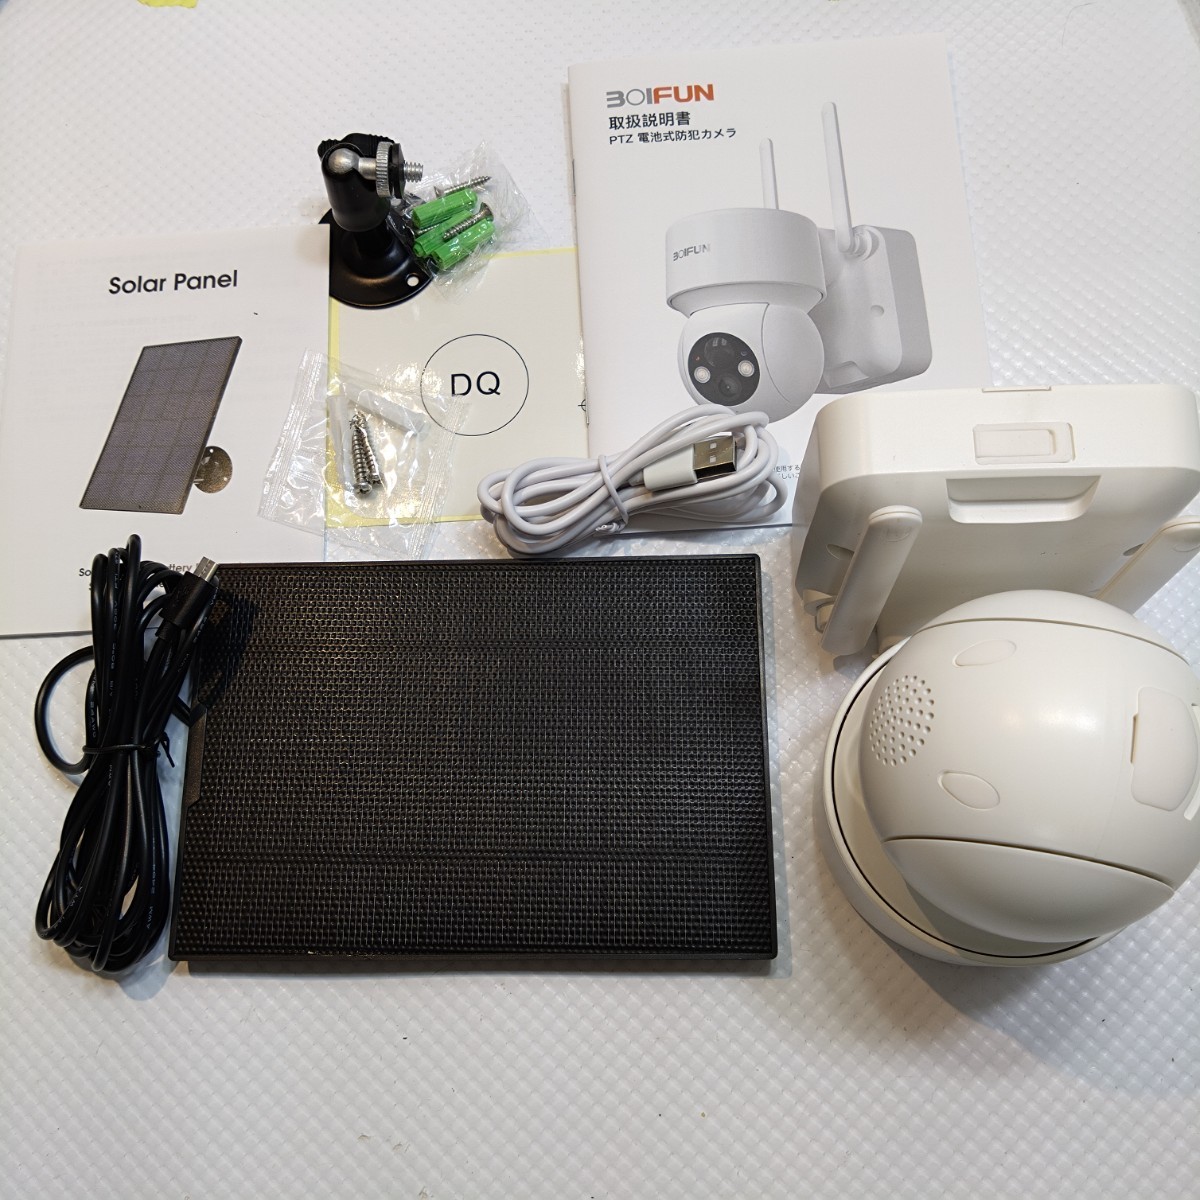 [ новый товар ]BOIFUN камера системы безопасности наружный солнечный беспроводной / WIFI вечер цвет фотосъемка хлеб 355° наклон 120° 360° широкоугольный фотосъемка мониторинг камера наружный no.599